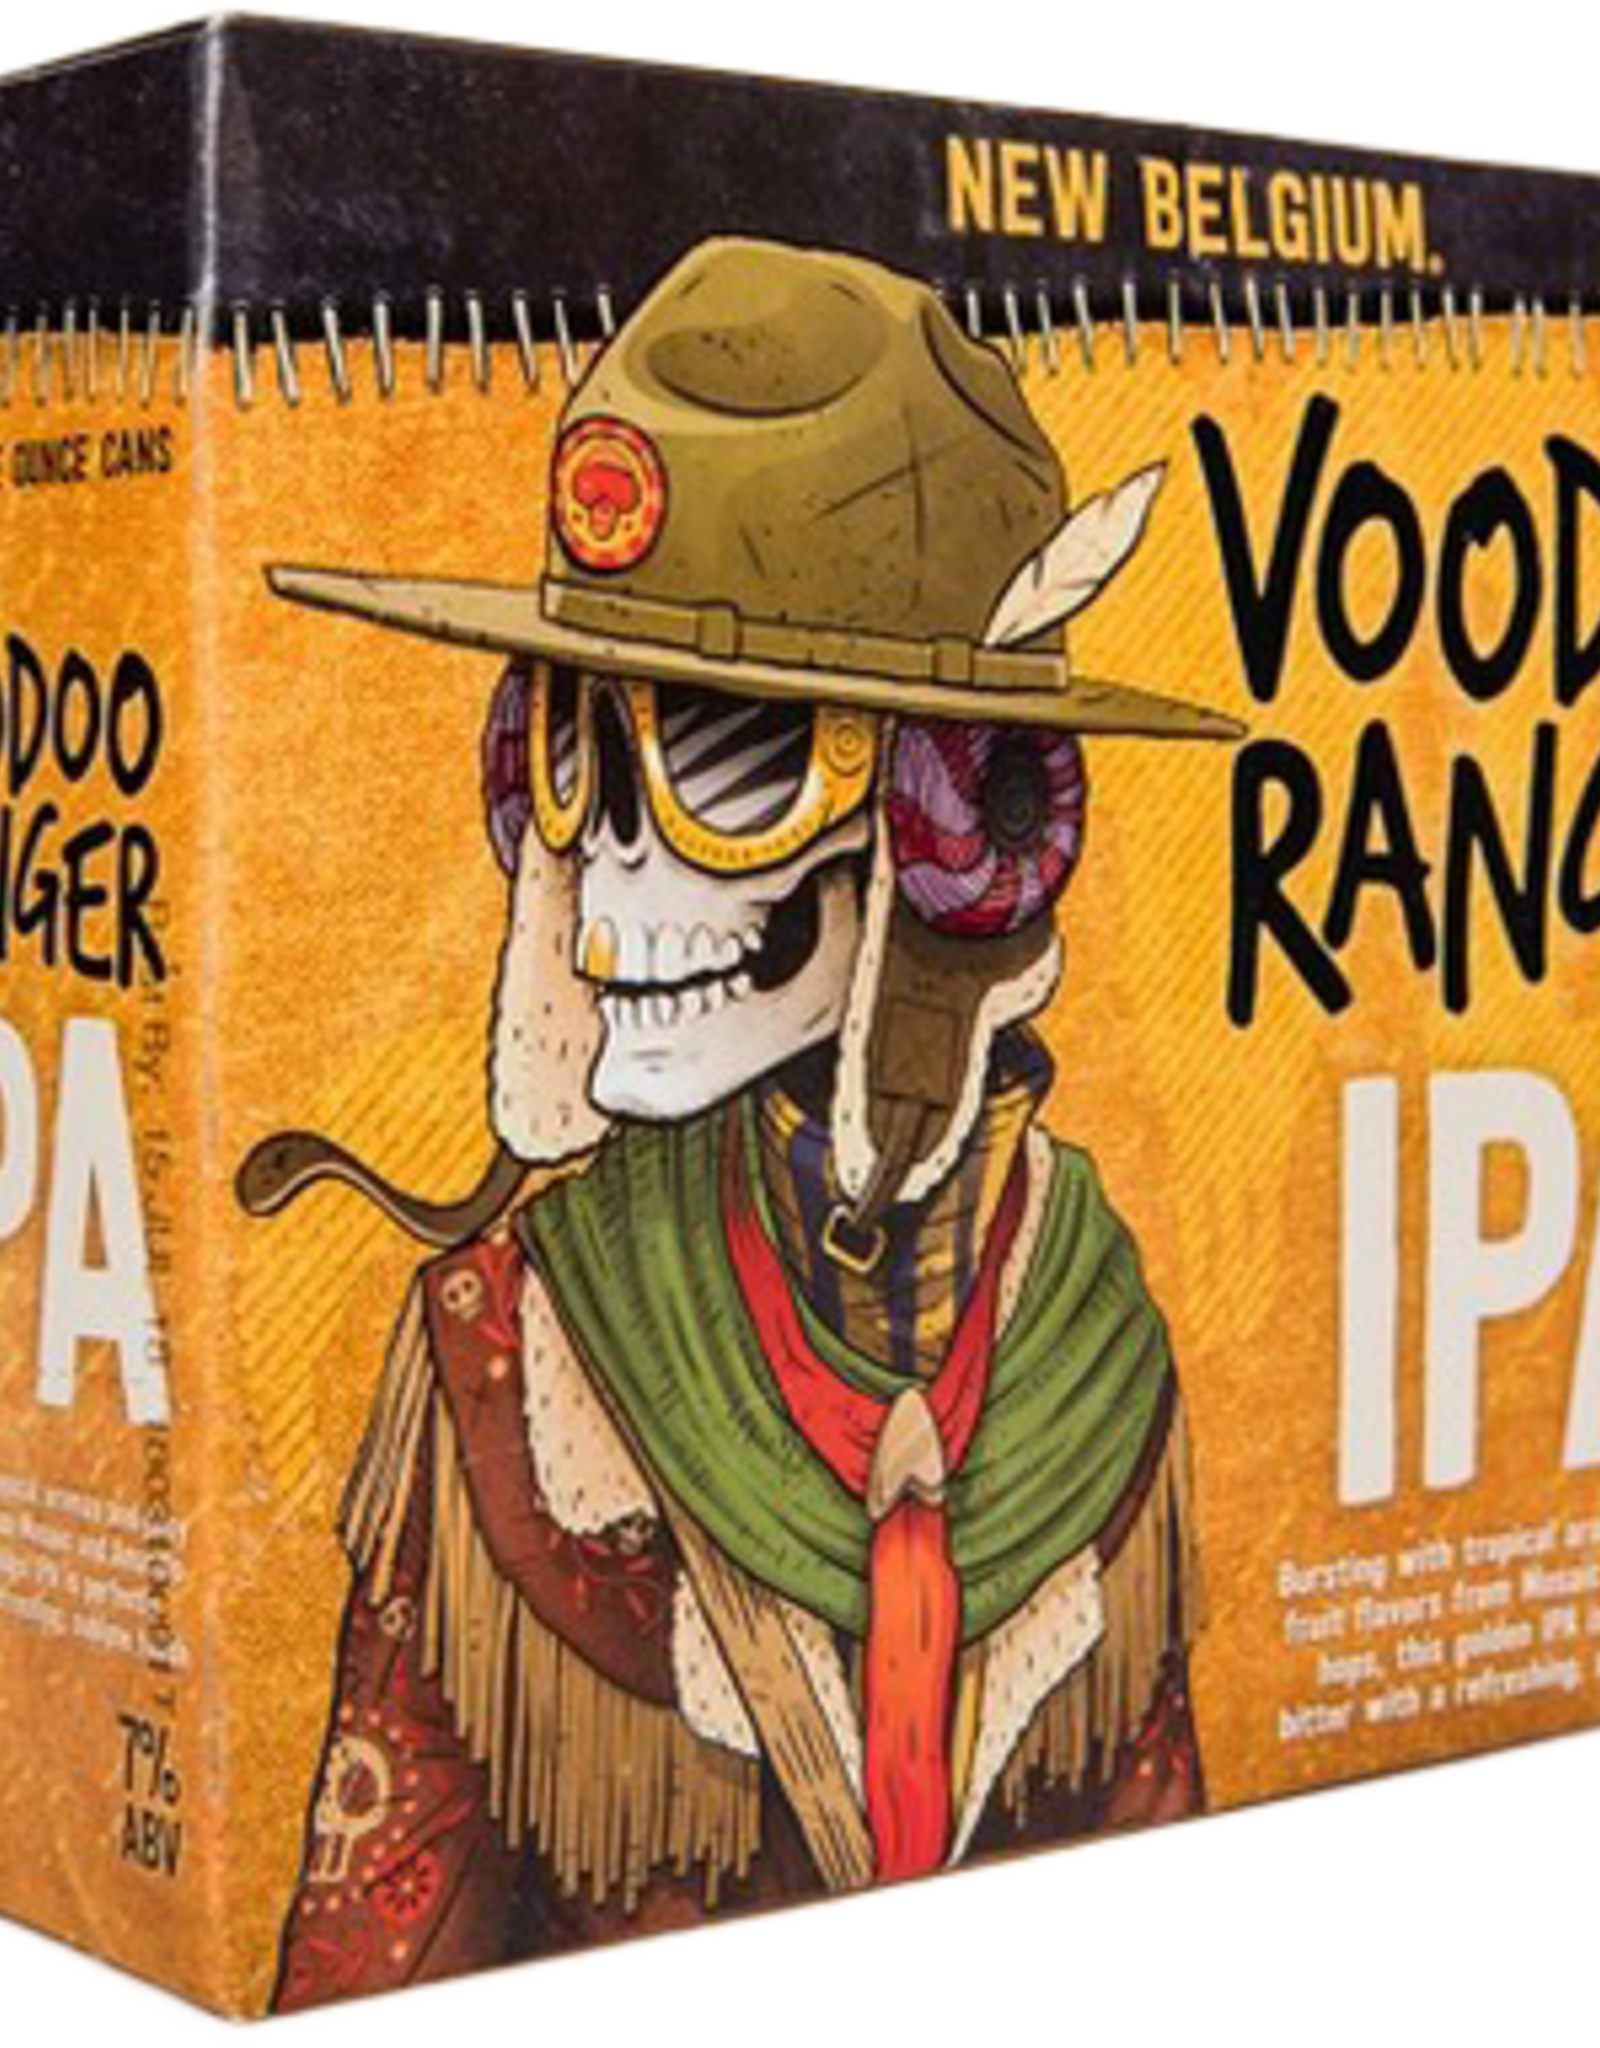 New Belgium Voodoo Ranger IPA 12x12 oz bottles